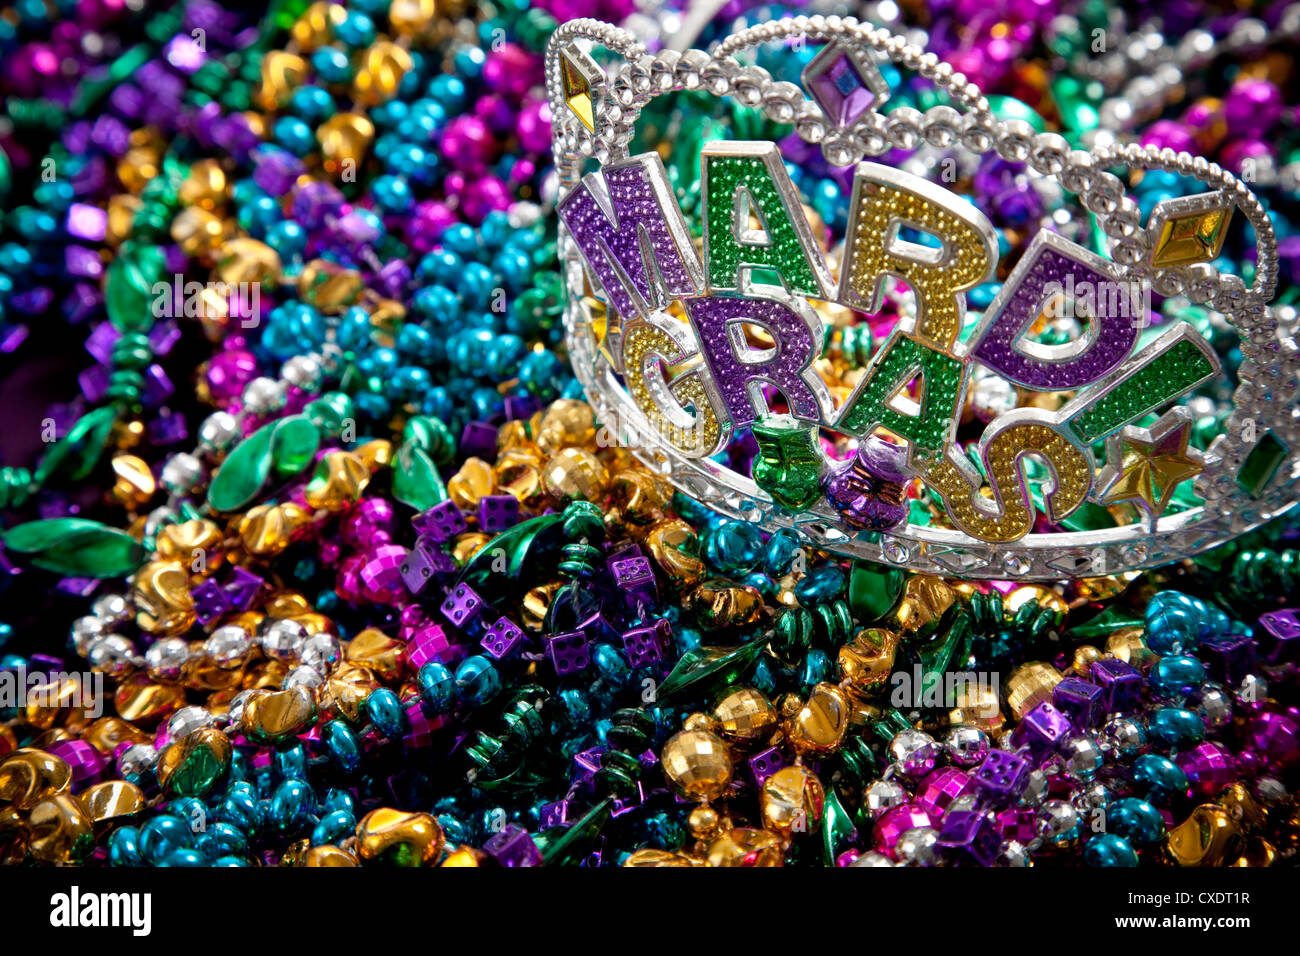 Un Mardi gras colorés ou de la couronne tiara située au-dessus de perles, thème de vacances Banque D'Images